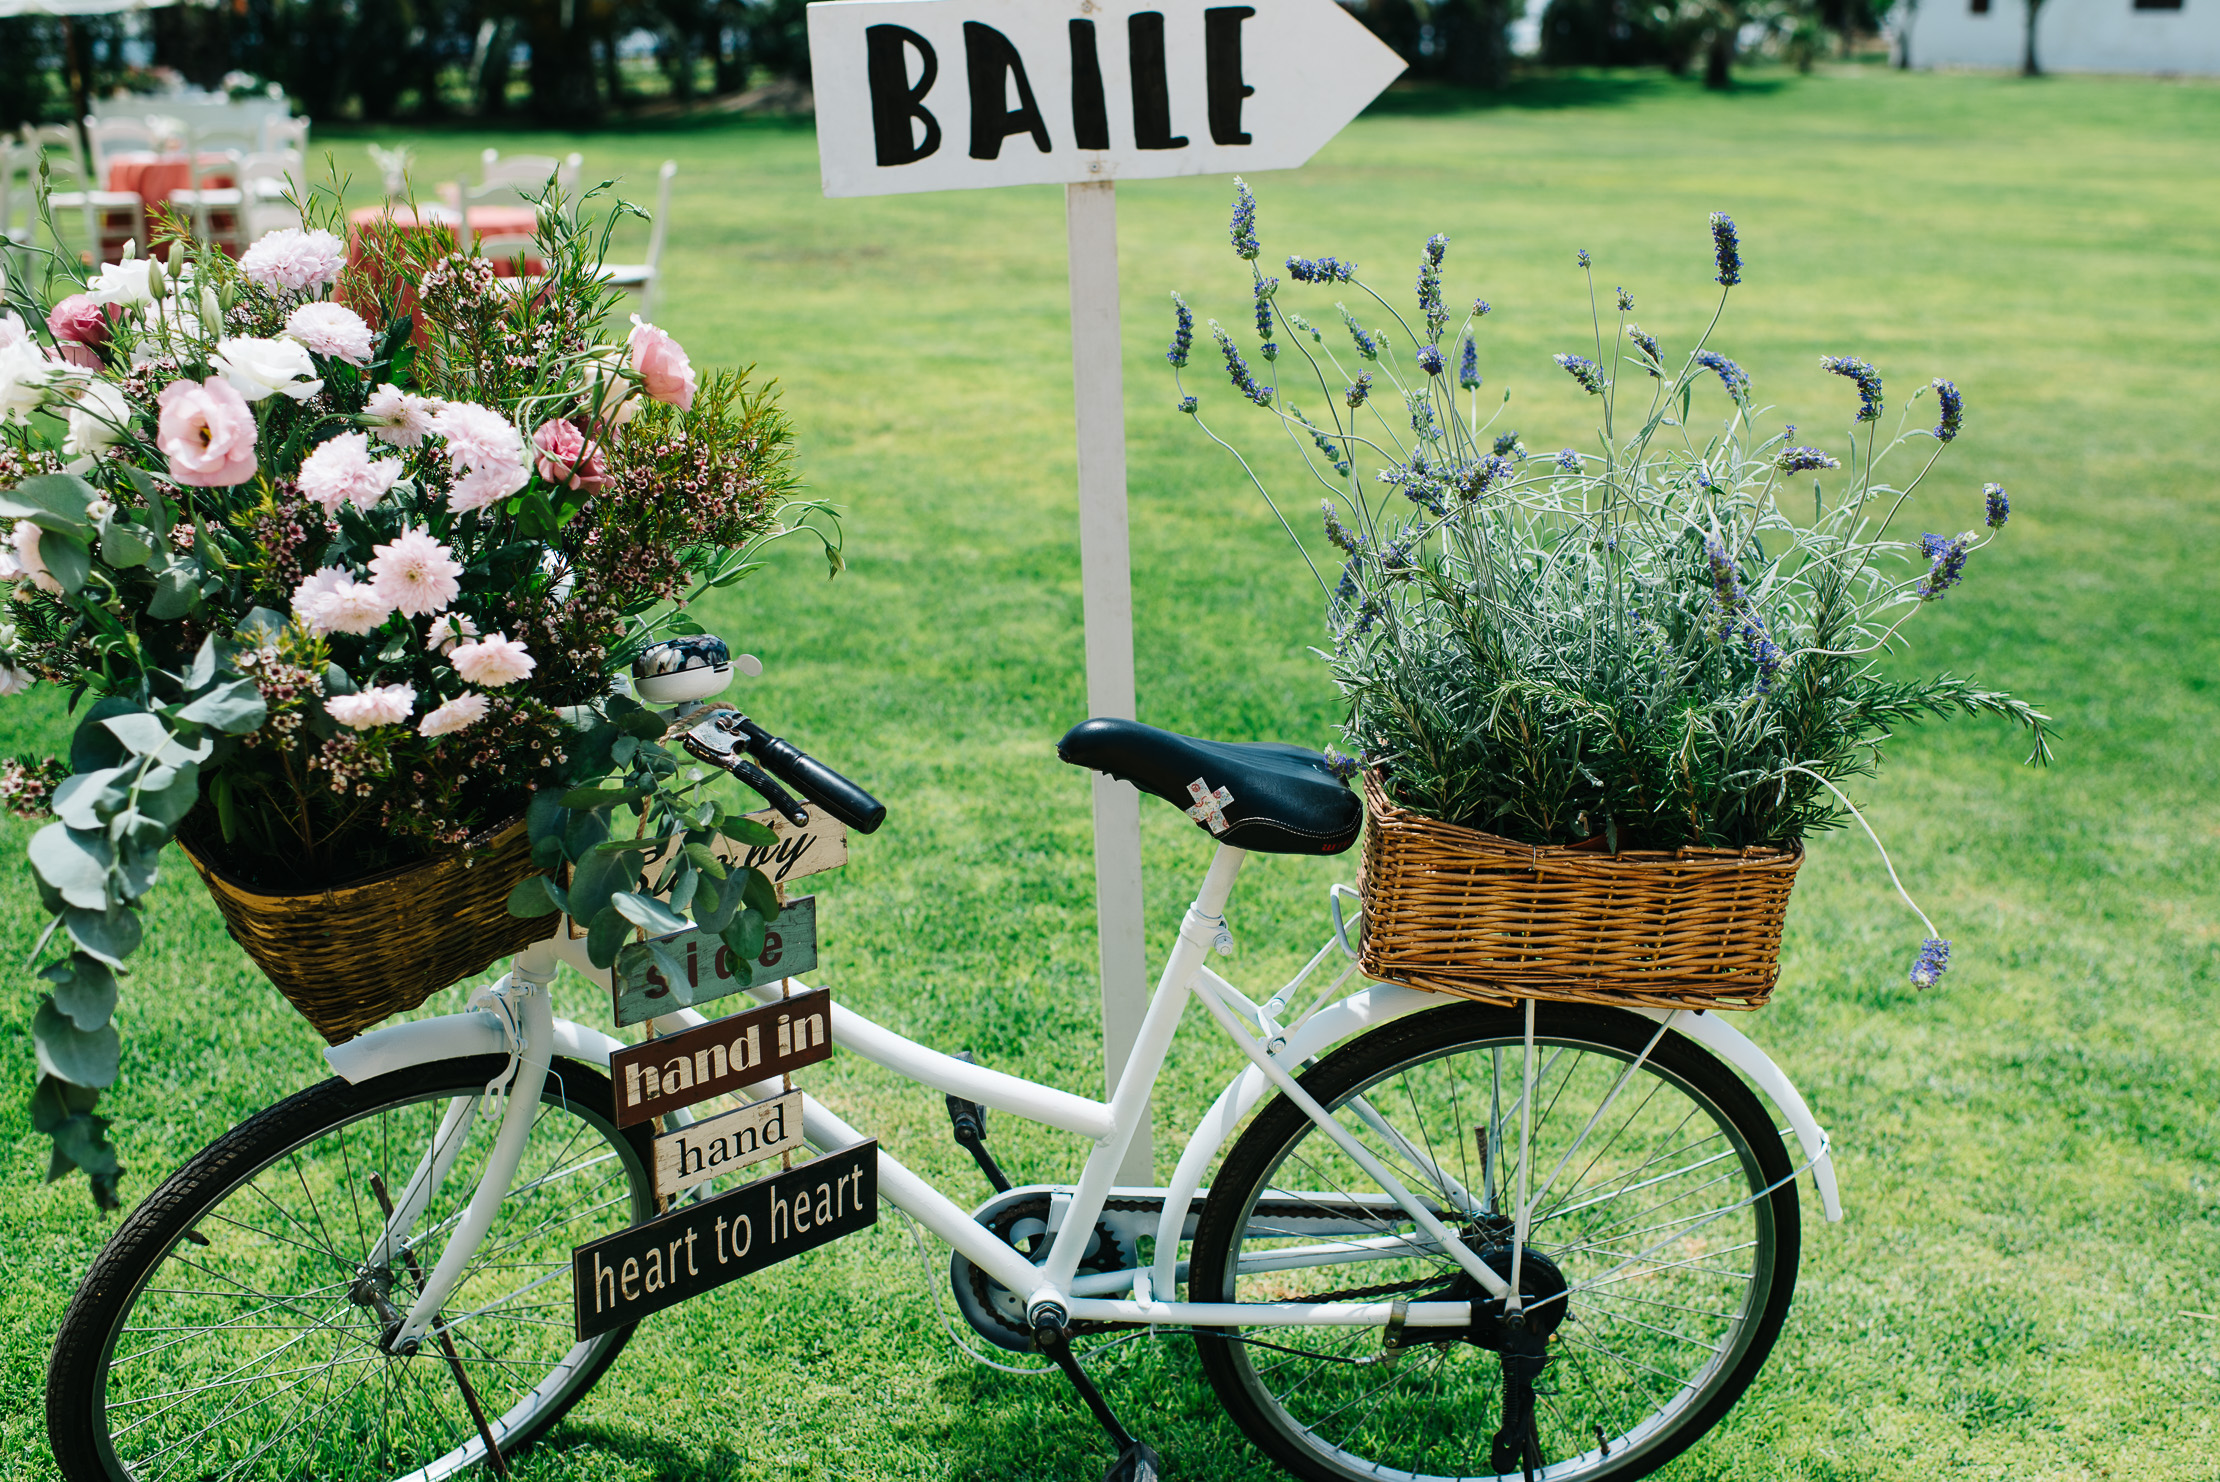 Bicicleta con indicaciones boda - Boda Inma & Ronan en Dehesa Bolaños